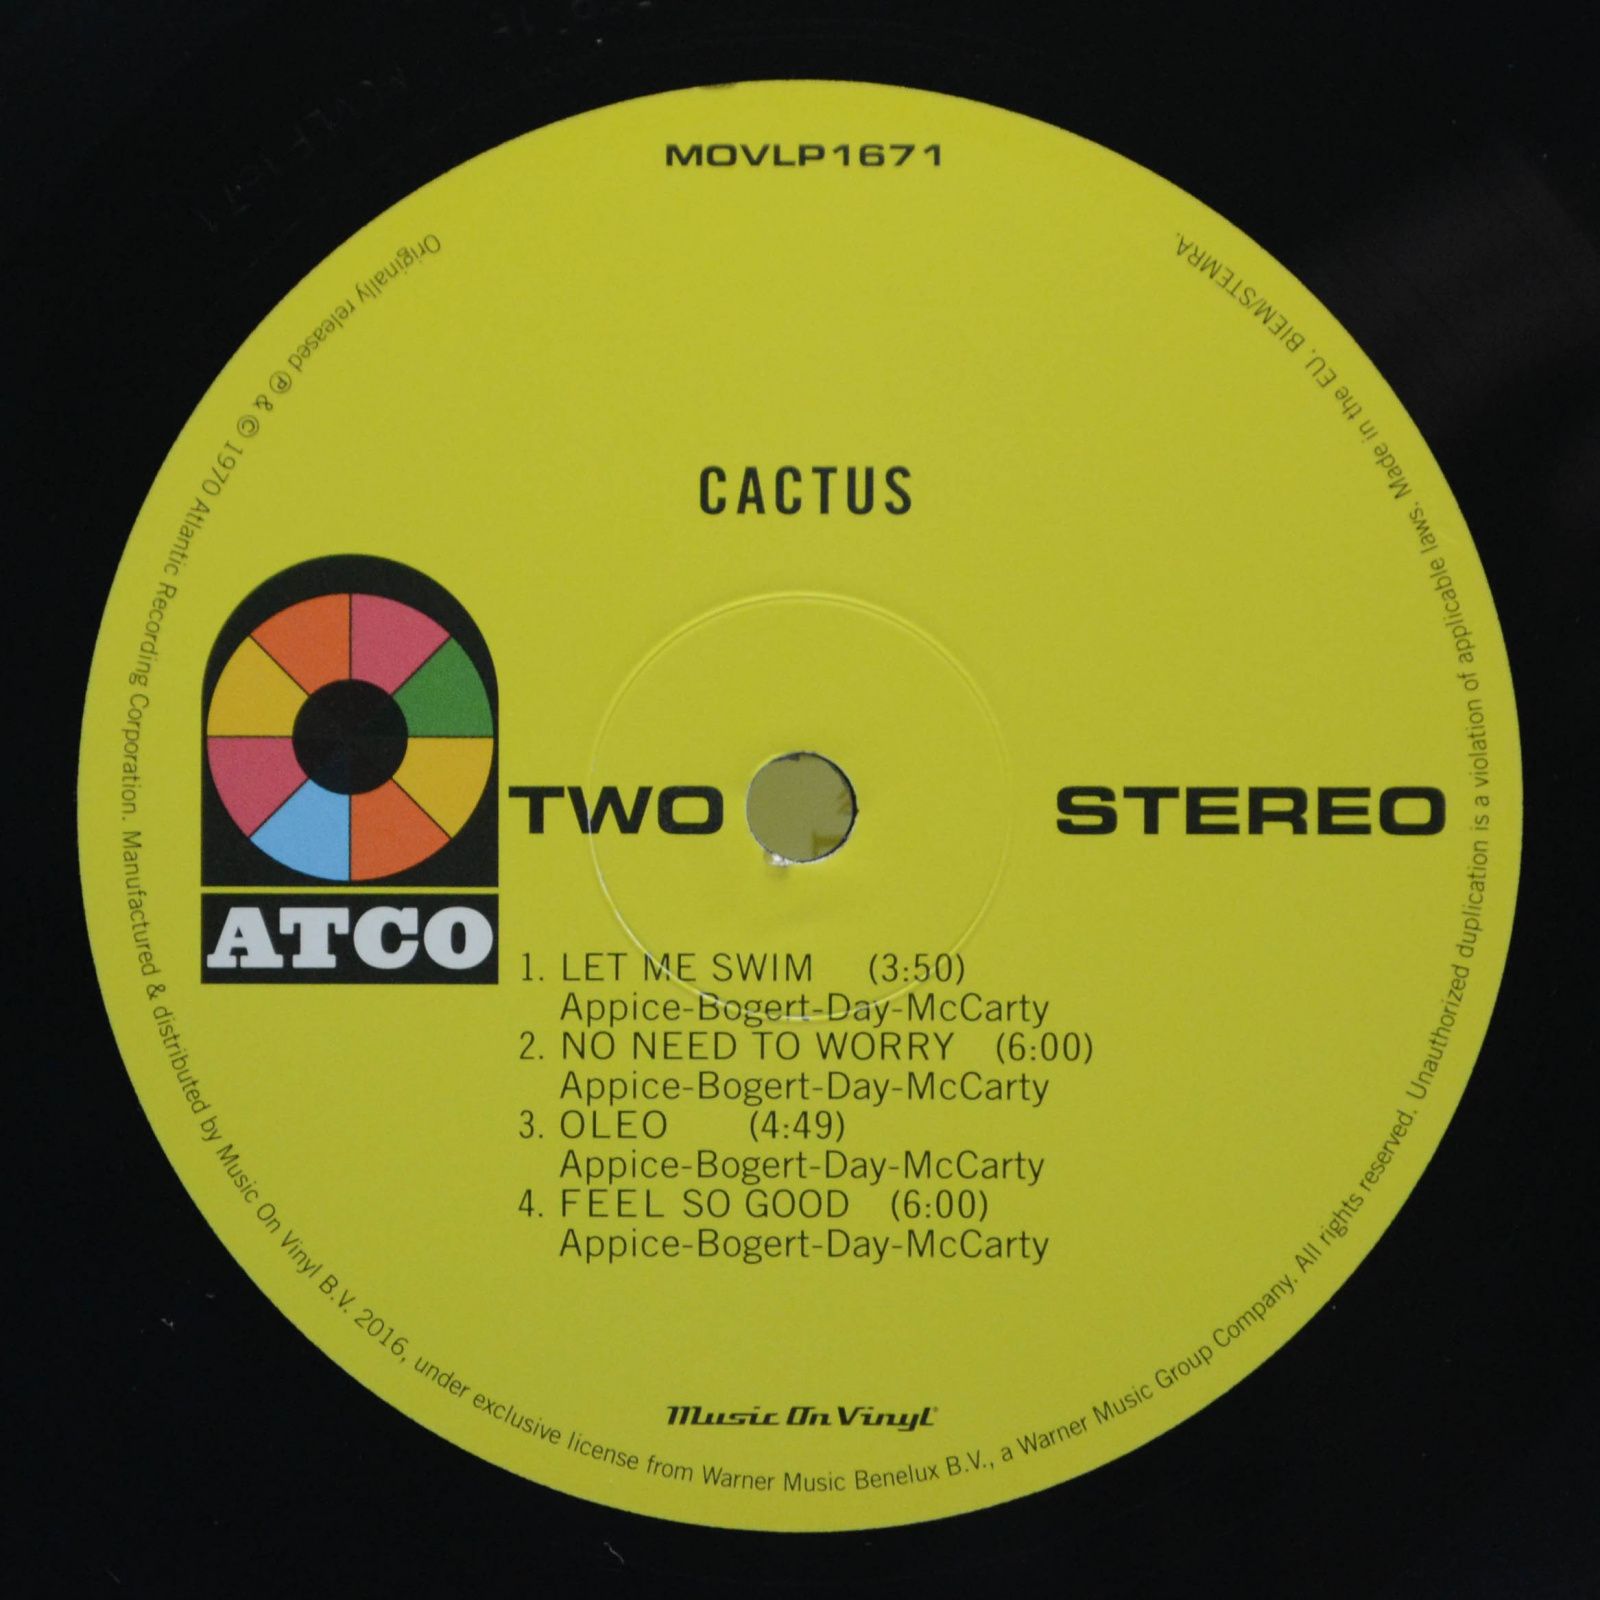 Cactus — Cactus, 1970